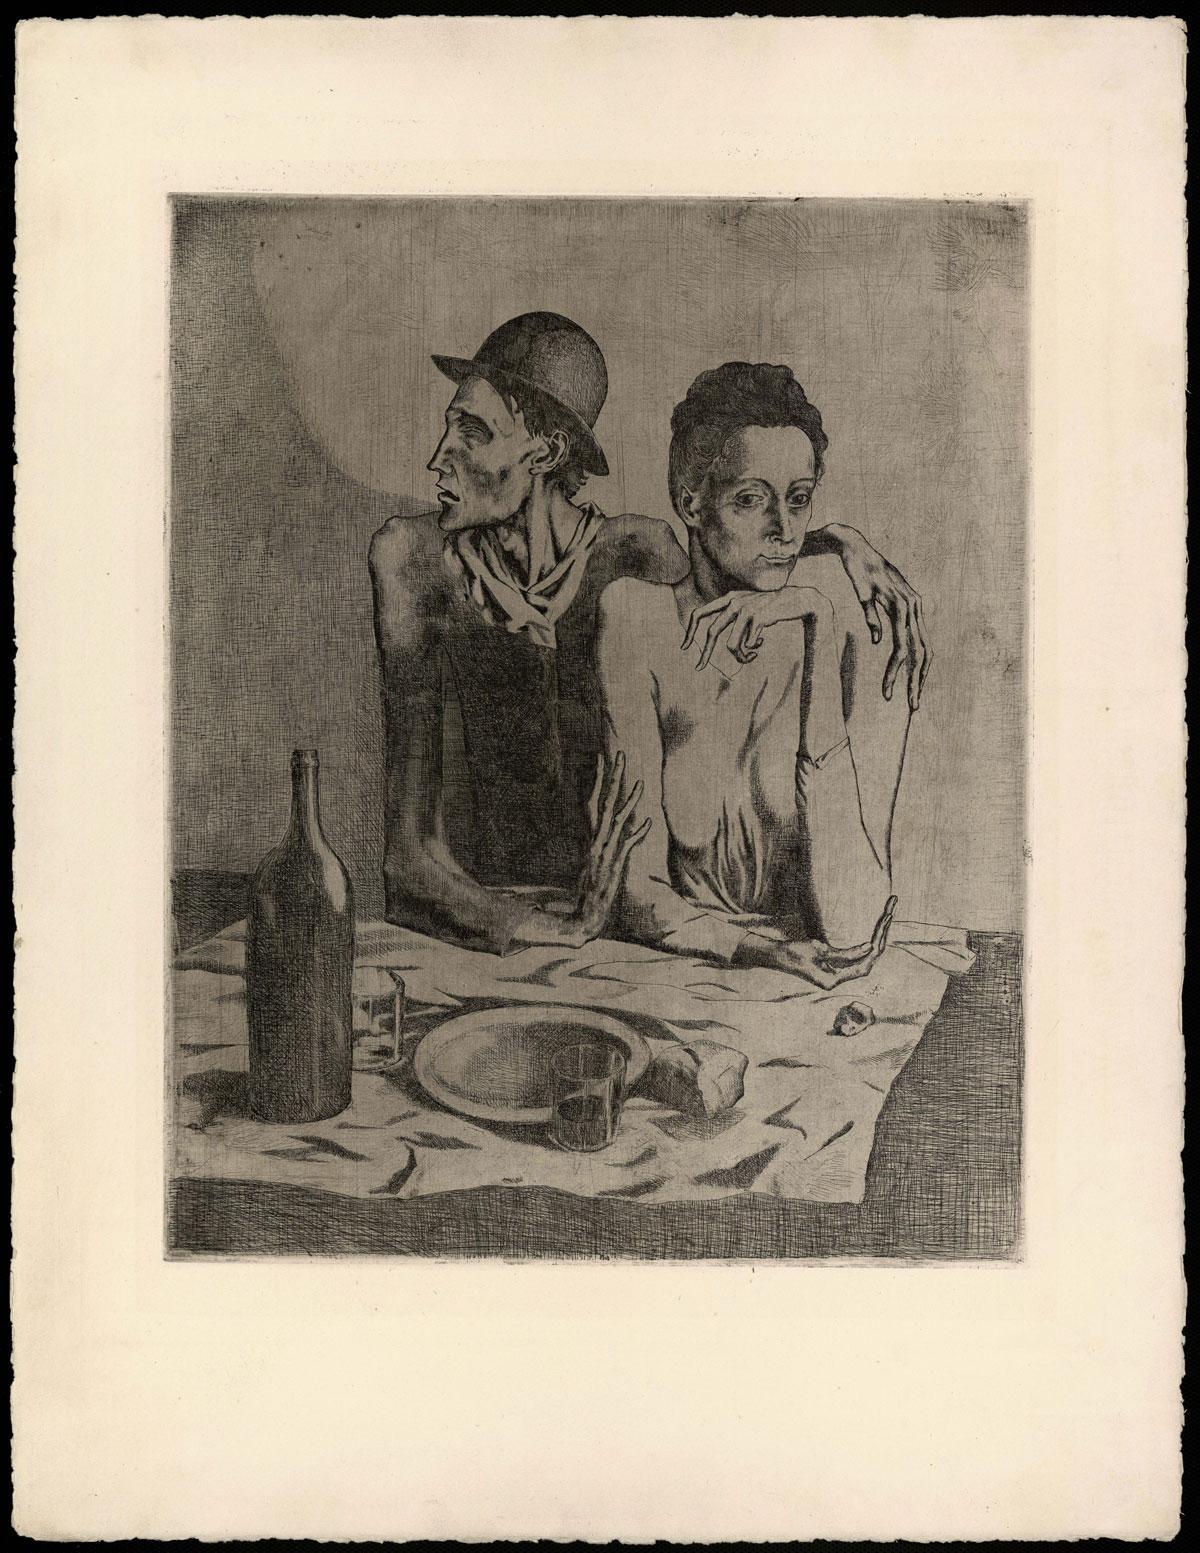 El almuerzo frugal (Le repas frugal). Septiembre de 1904, París.